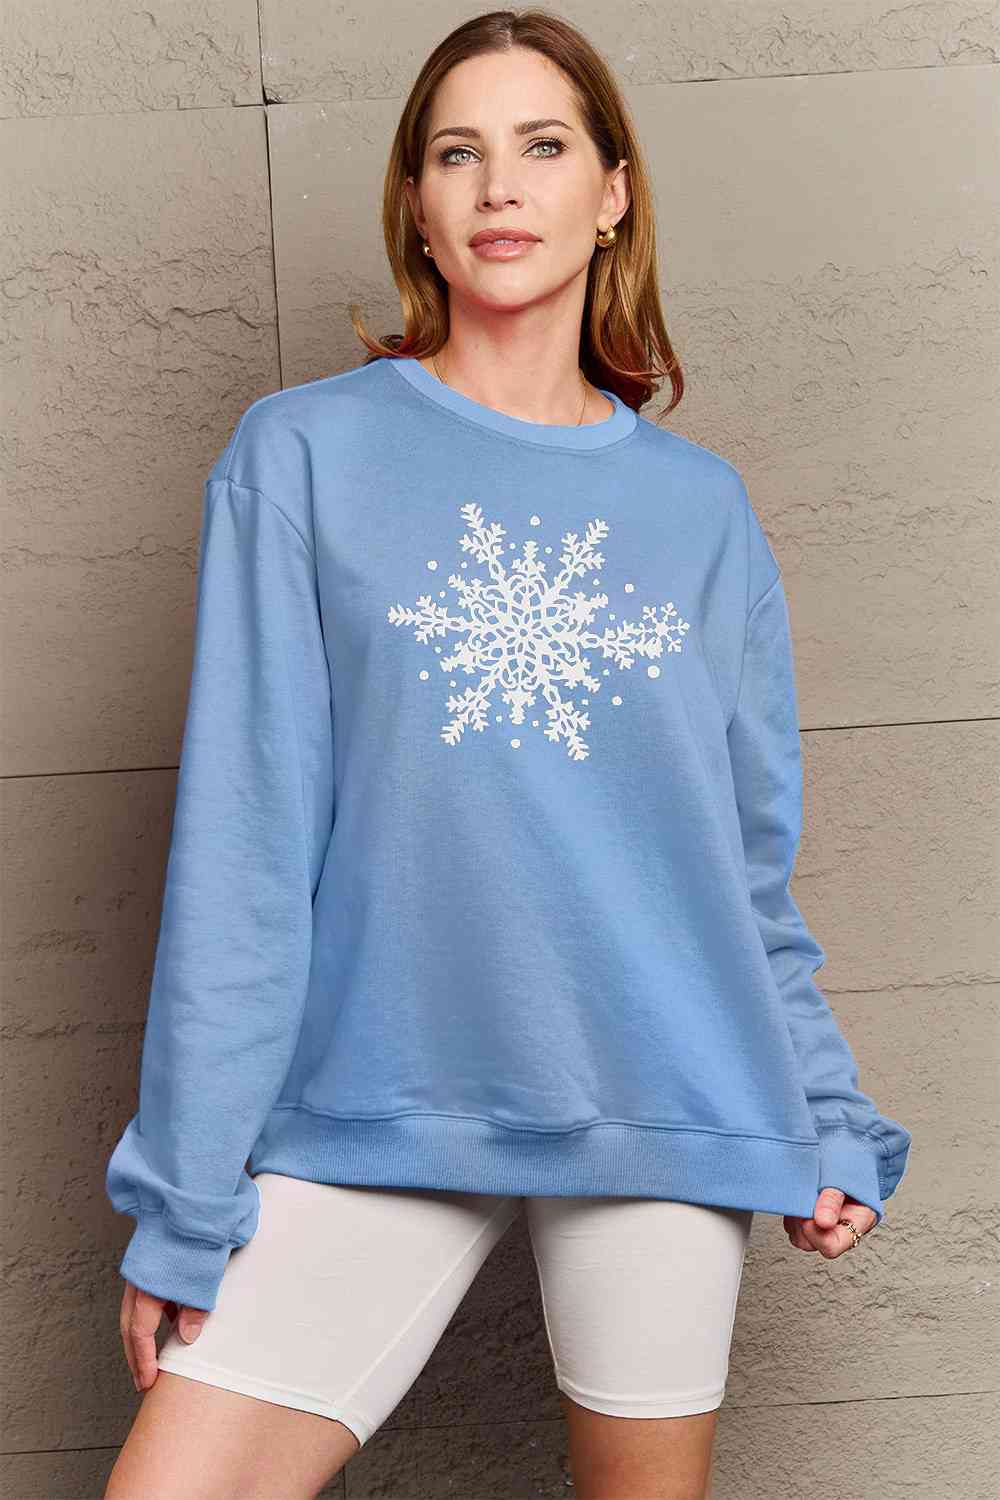 Simply Love - Sweat-shirt avec motif flocon de neige pleine taille